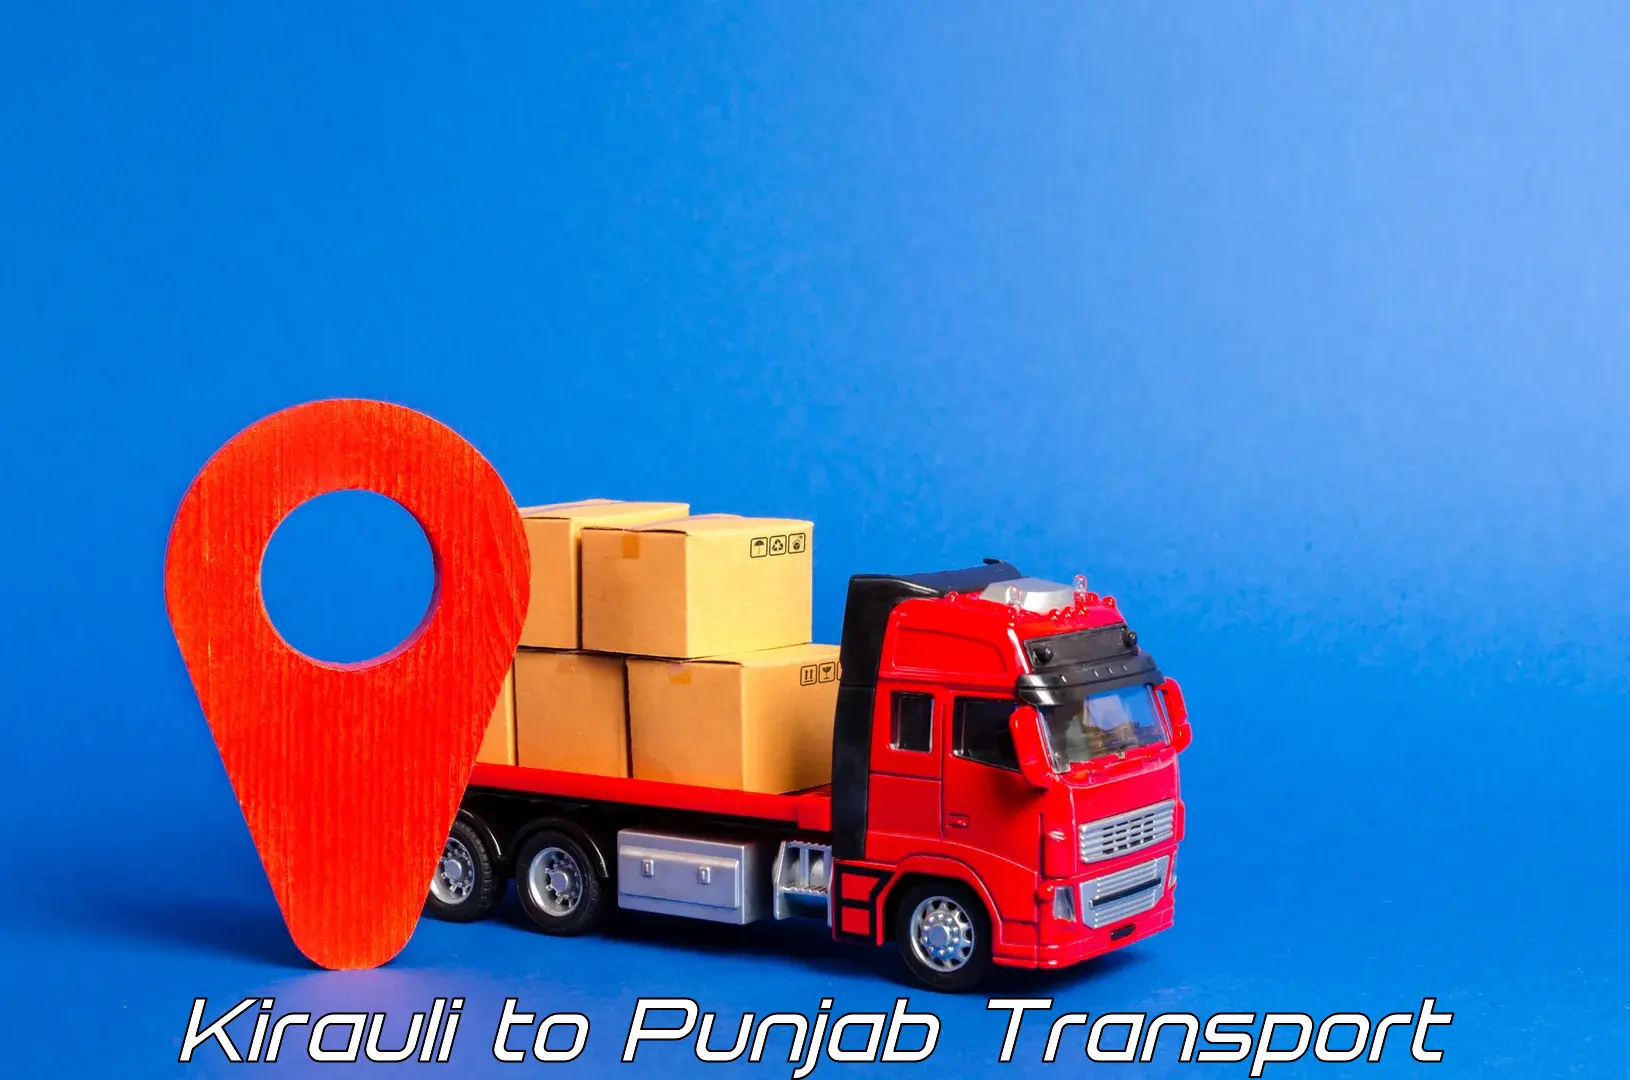 Vehicle transport services Kirauli to Punjab